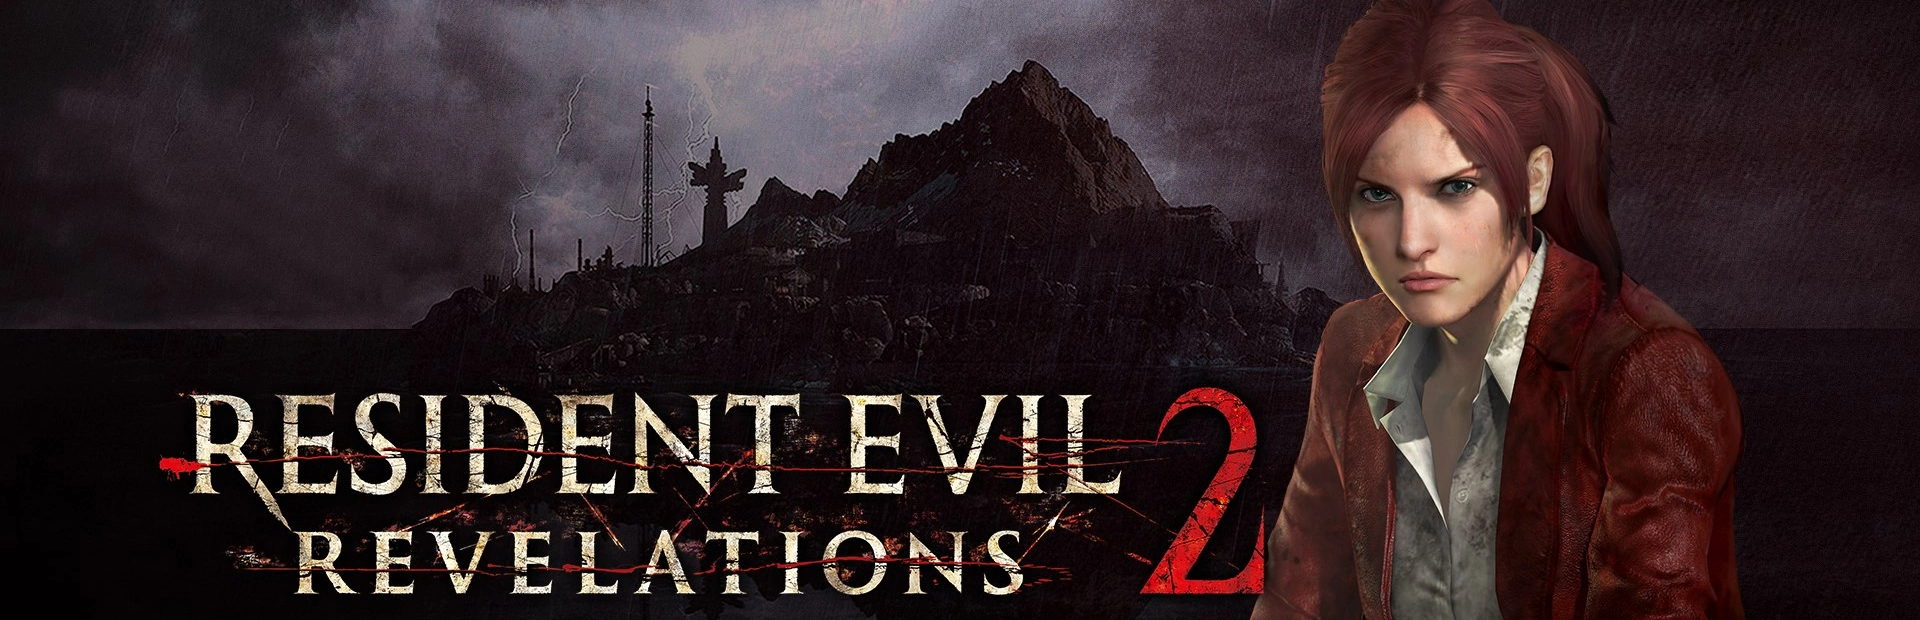 Resident Evil Revelations 2.banner3